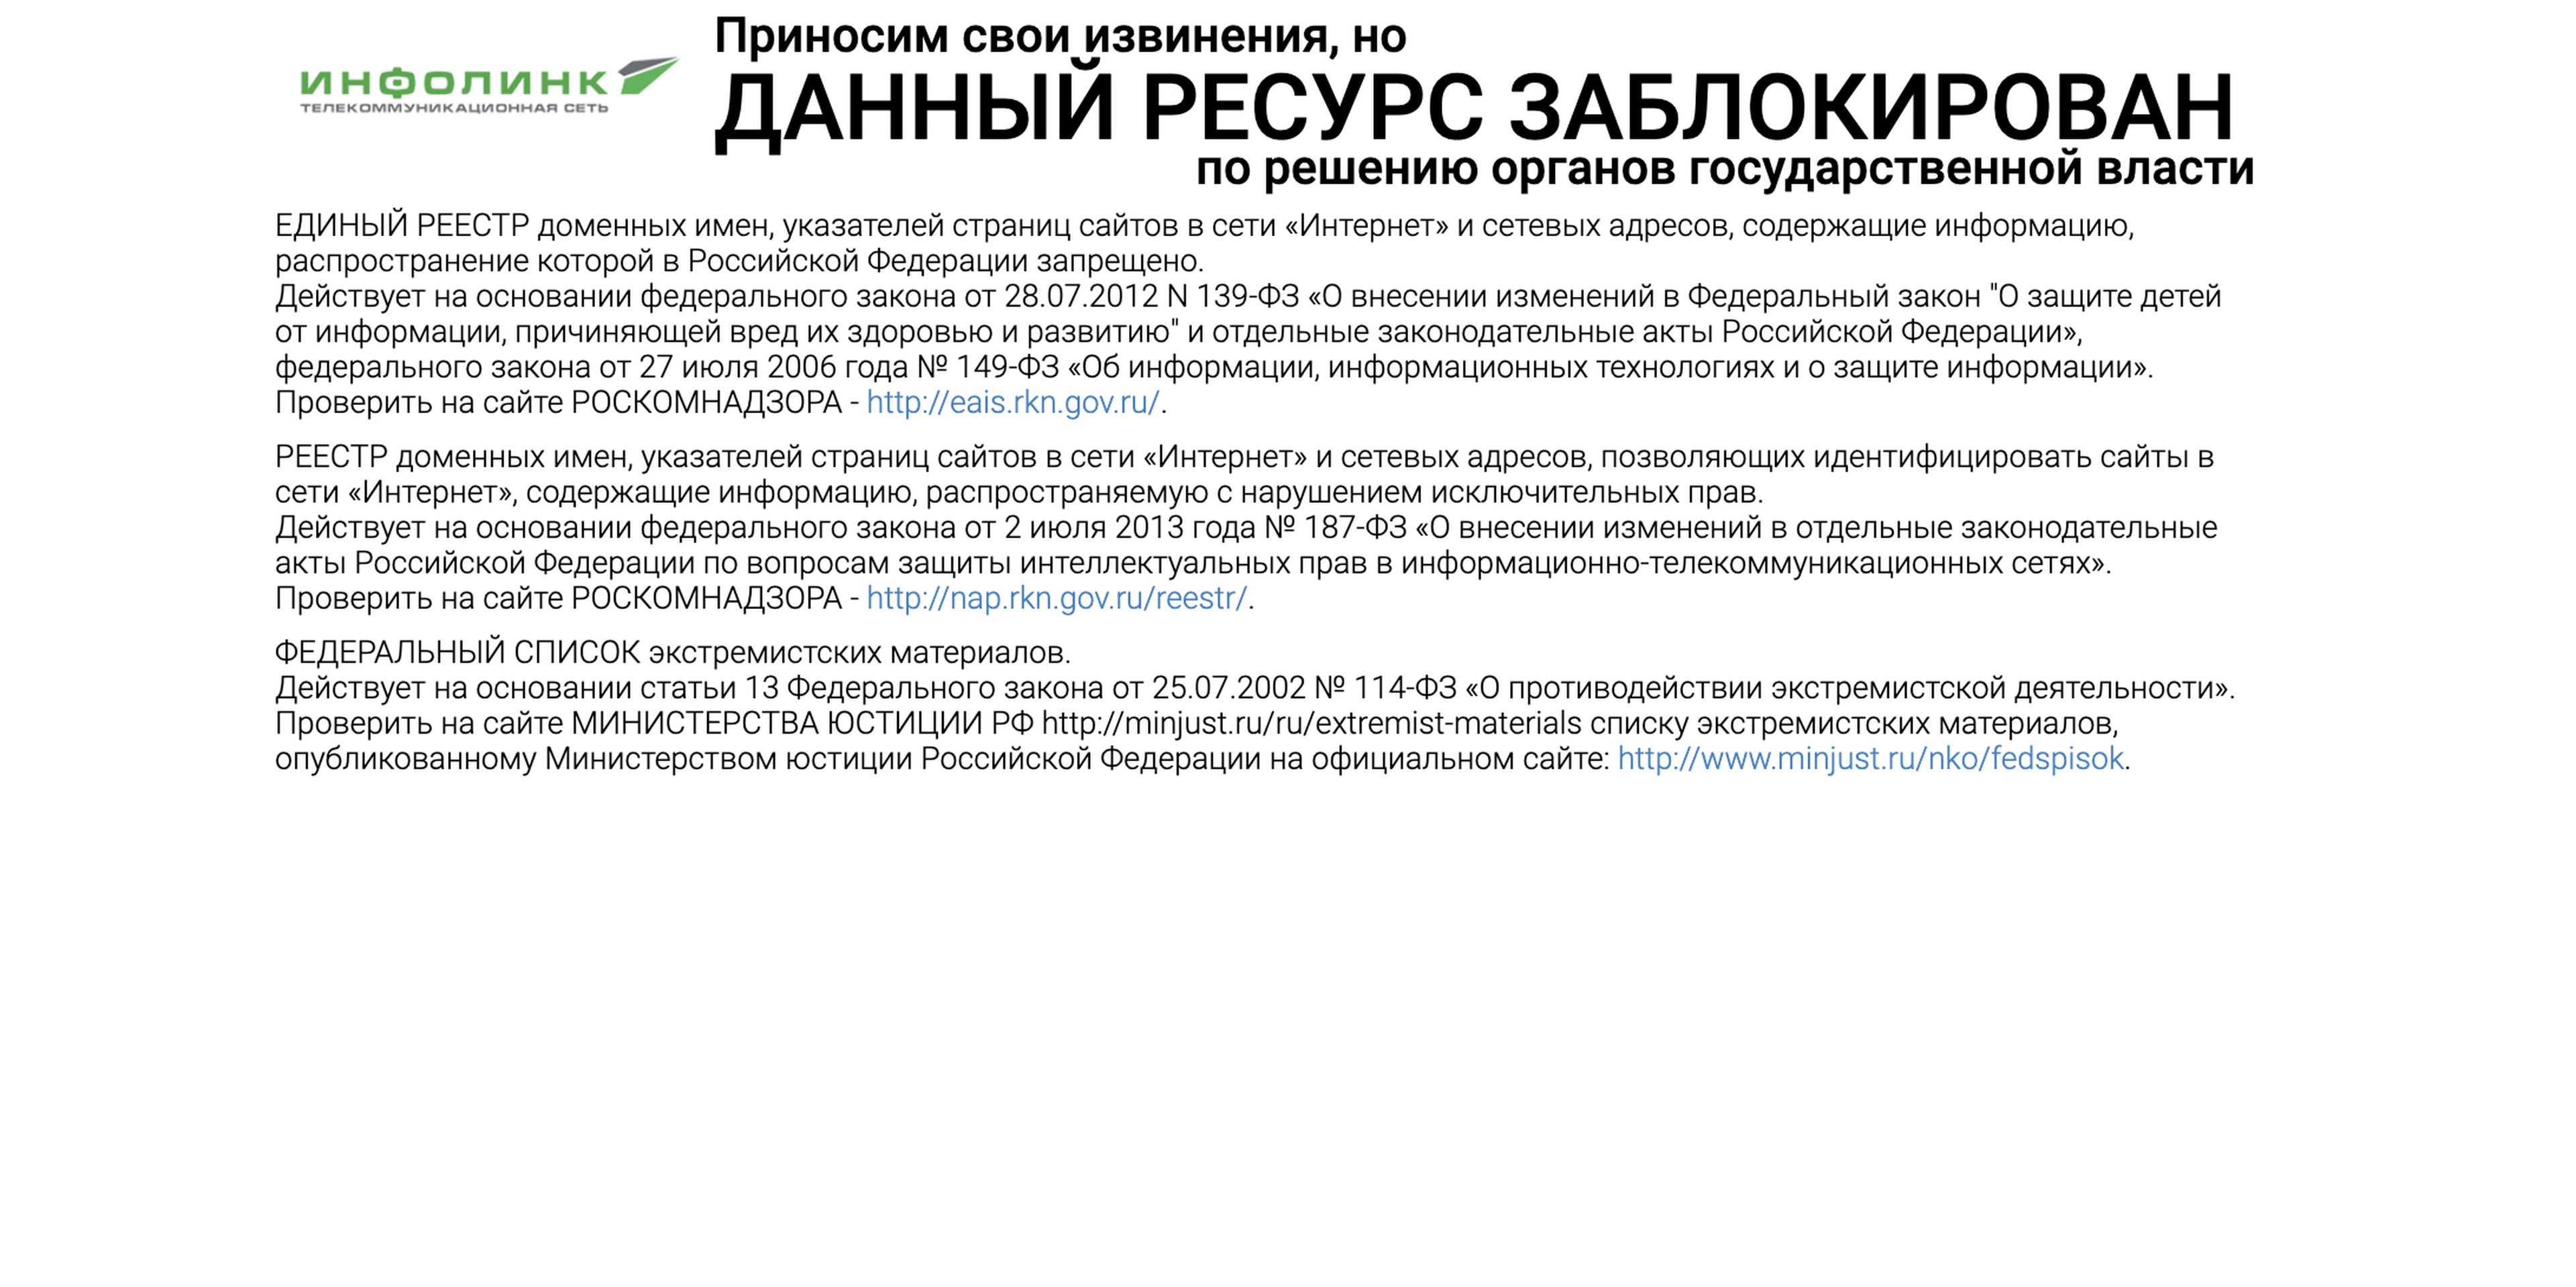 La página de error que reciben los usuarios rusos que intentan acceder a Instagram.com.